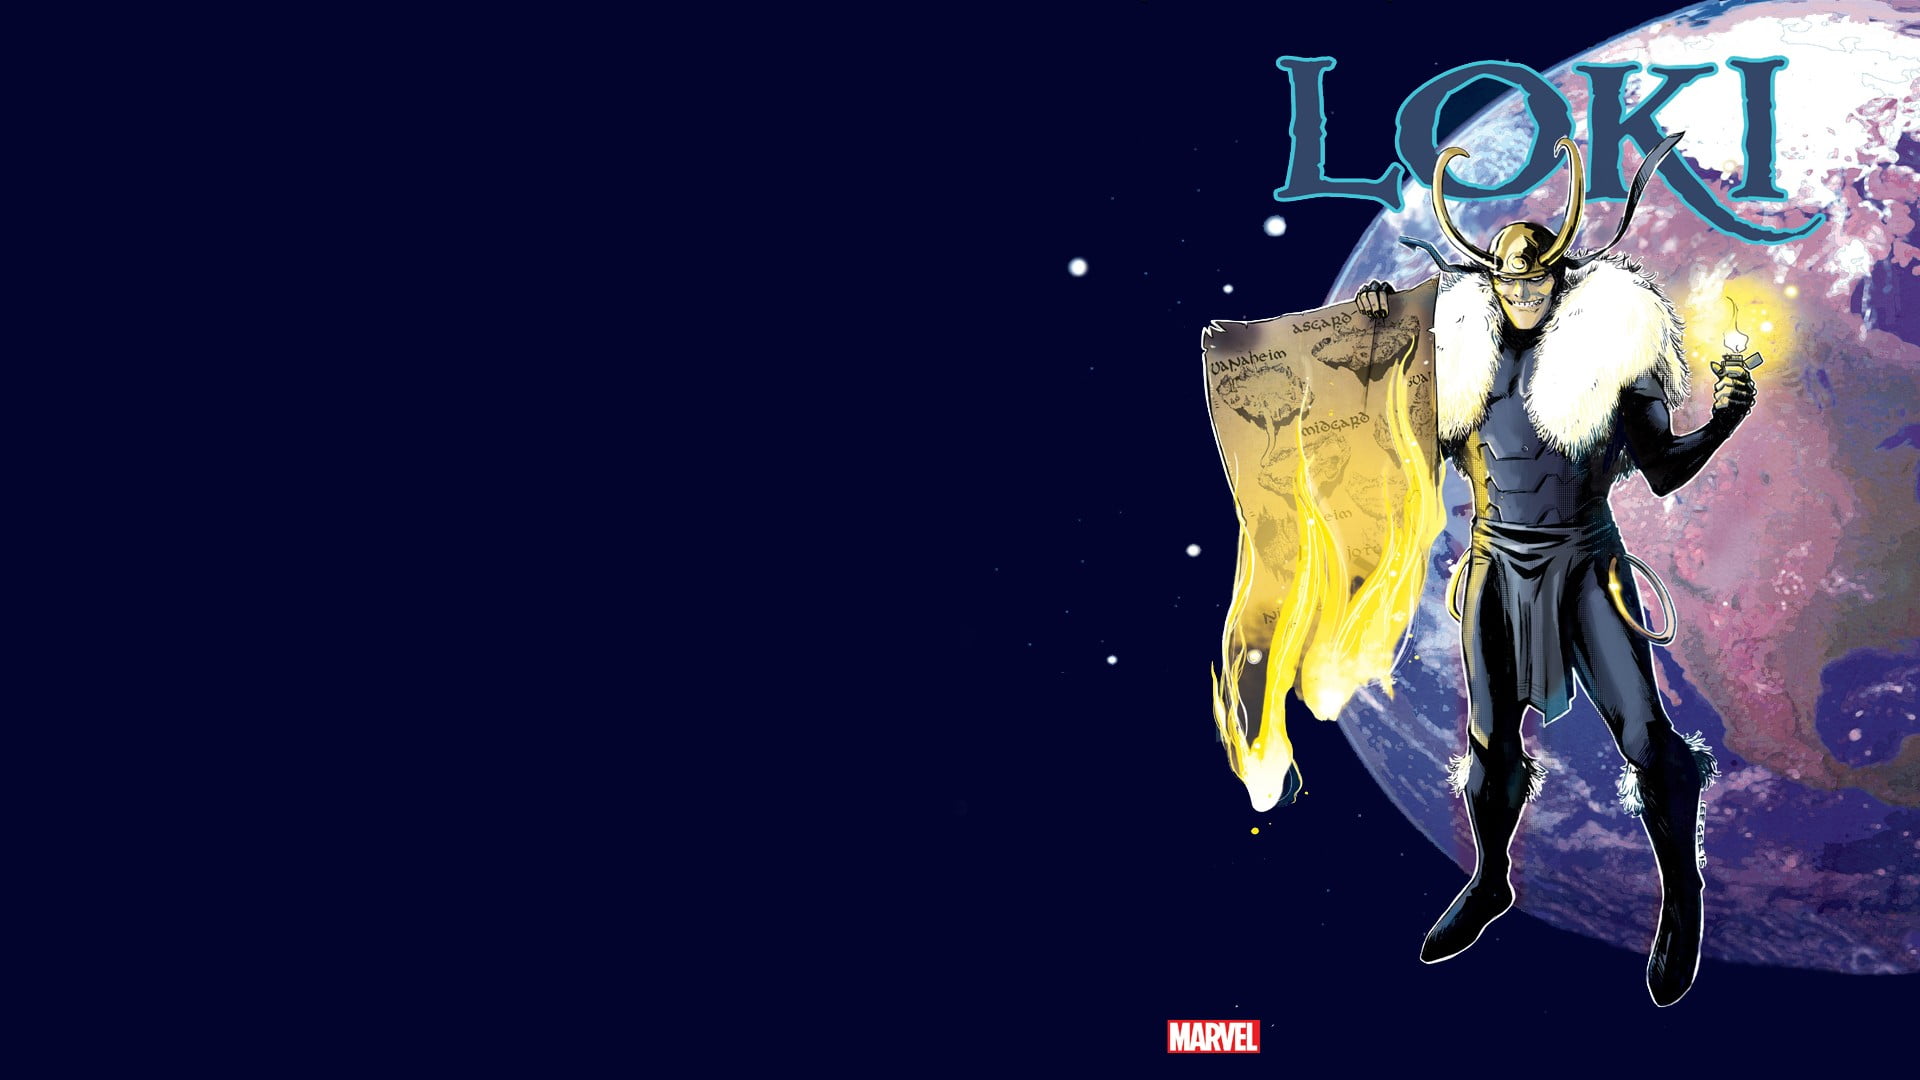 Loki animated illustration, Marvel Comics, no people, copy space